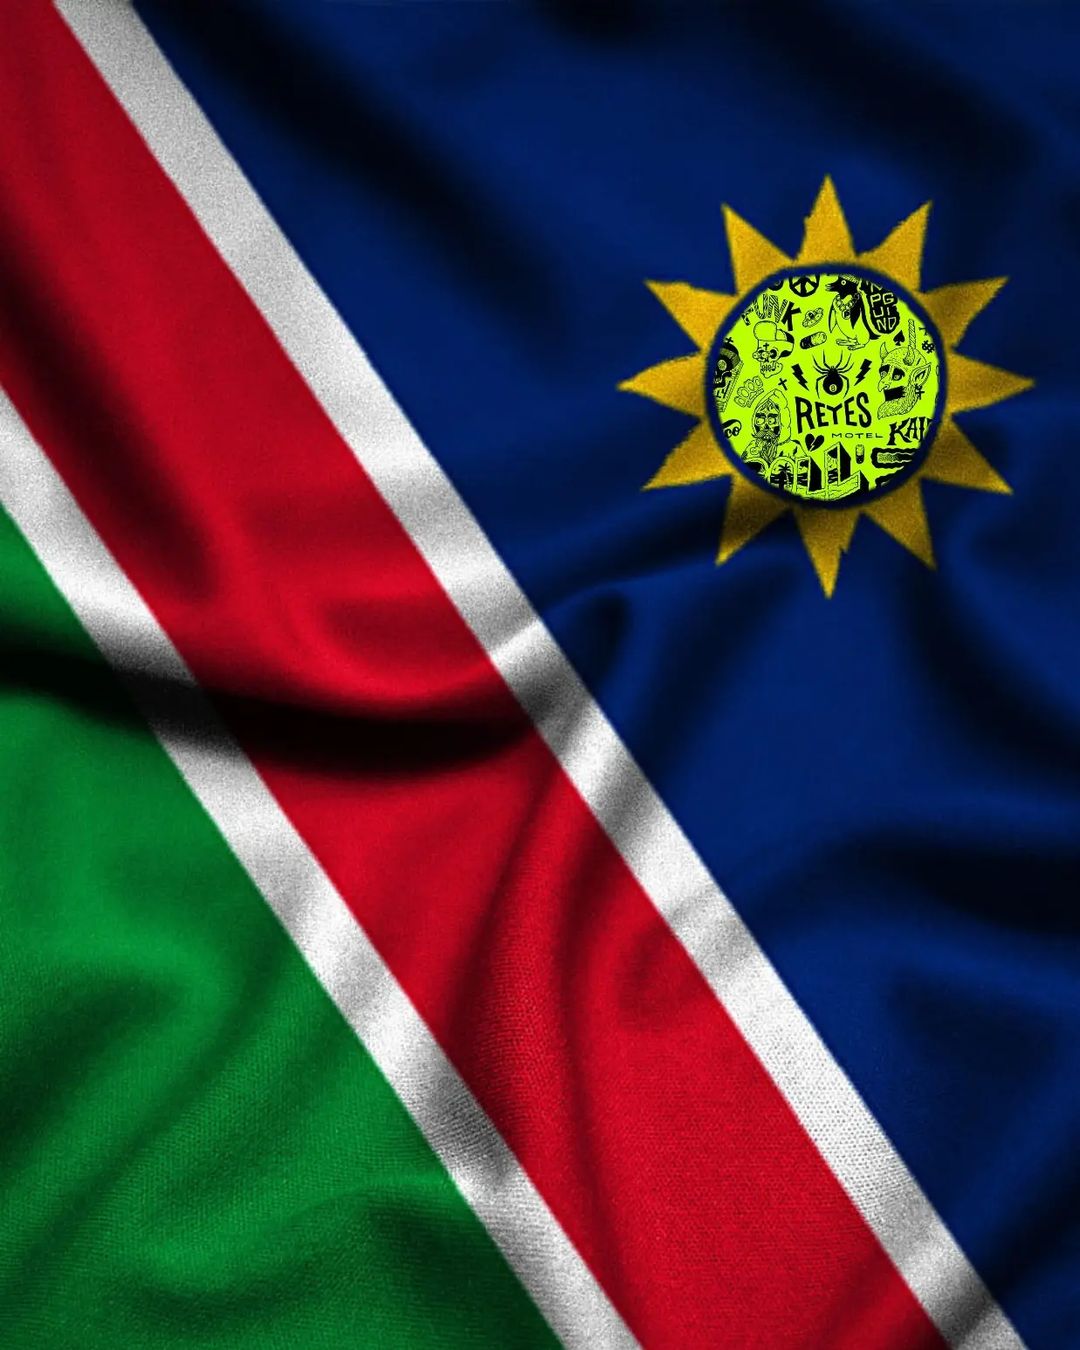 Bandiera della Namibia